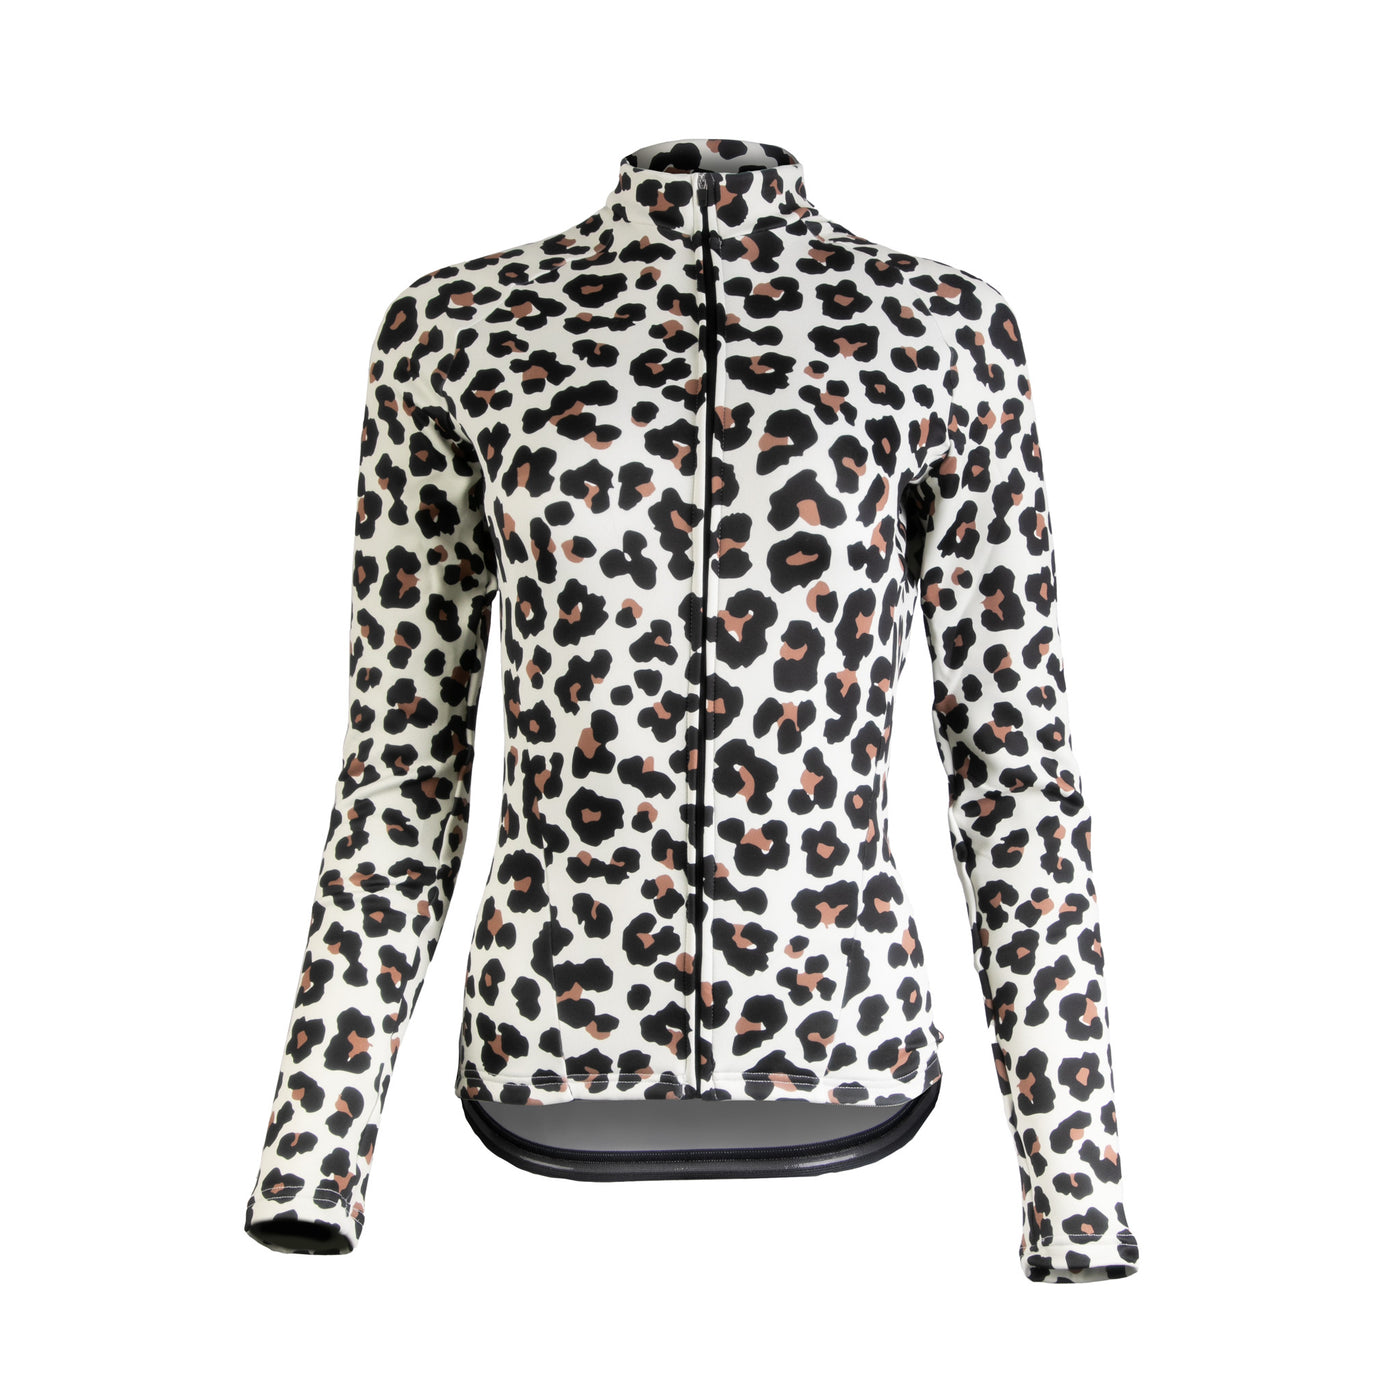 Leopard Print Women's Long Sleeve Winter Jersey